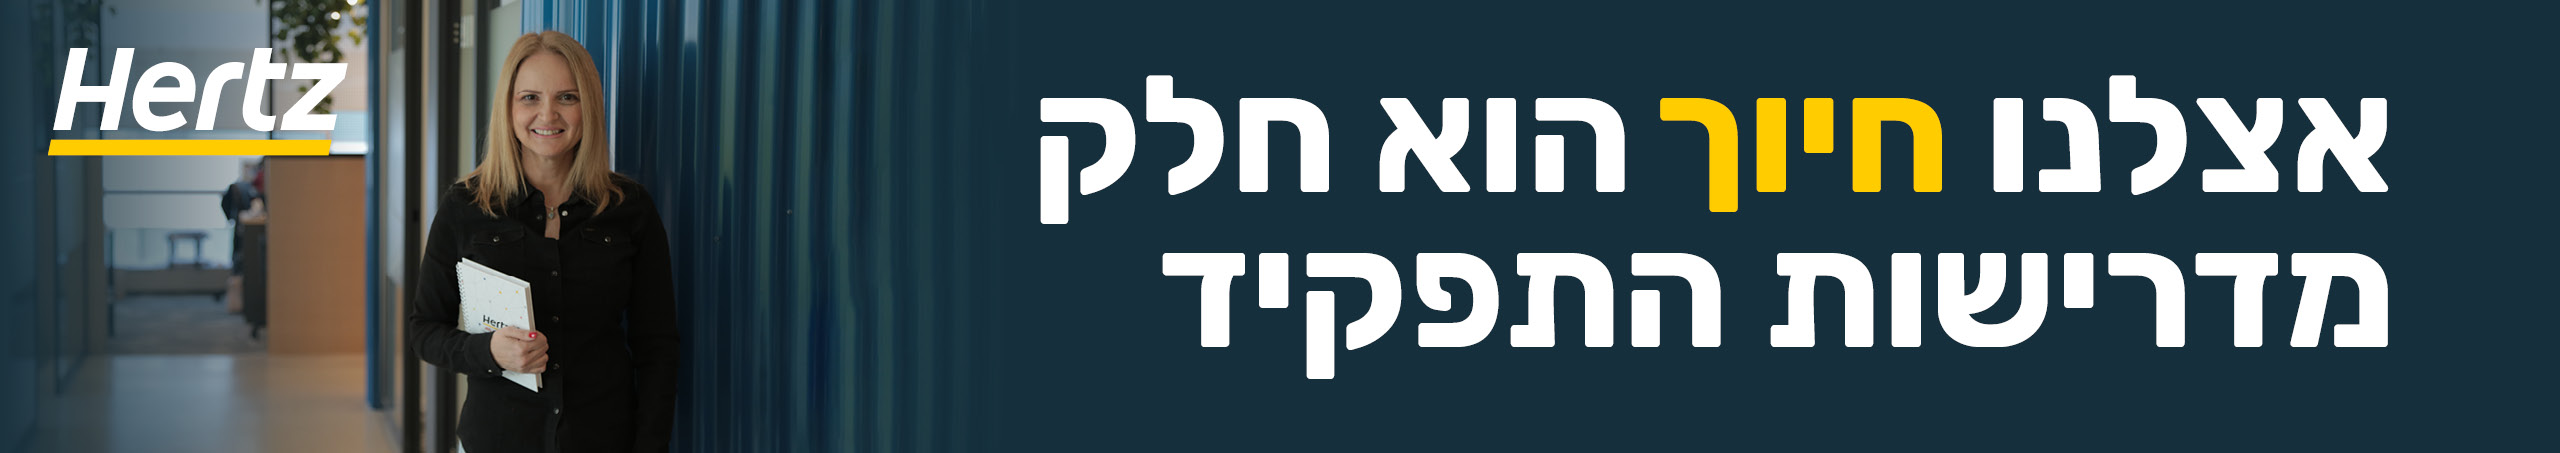 לוגו https://www.hertz.co.il/he/homepage/.aspx